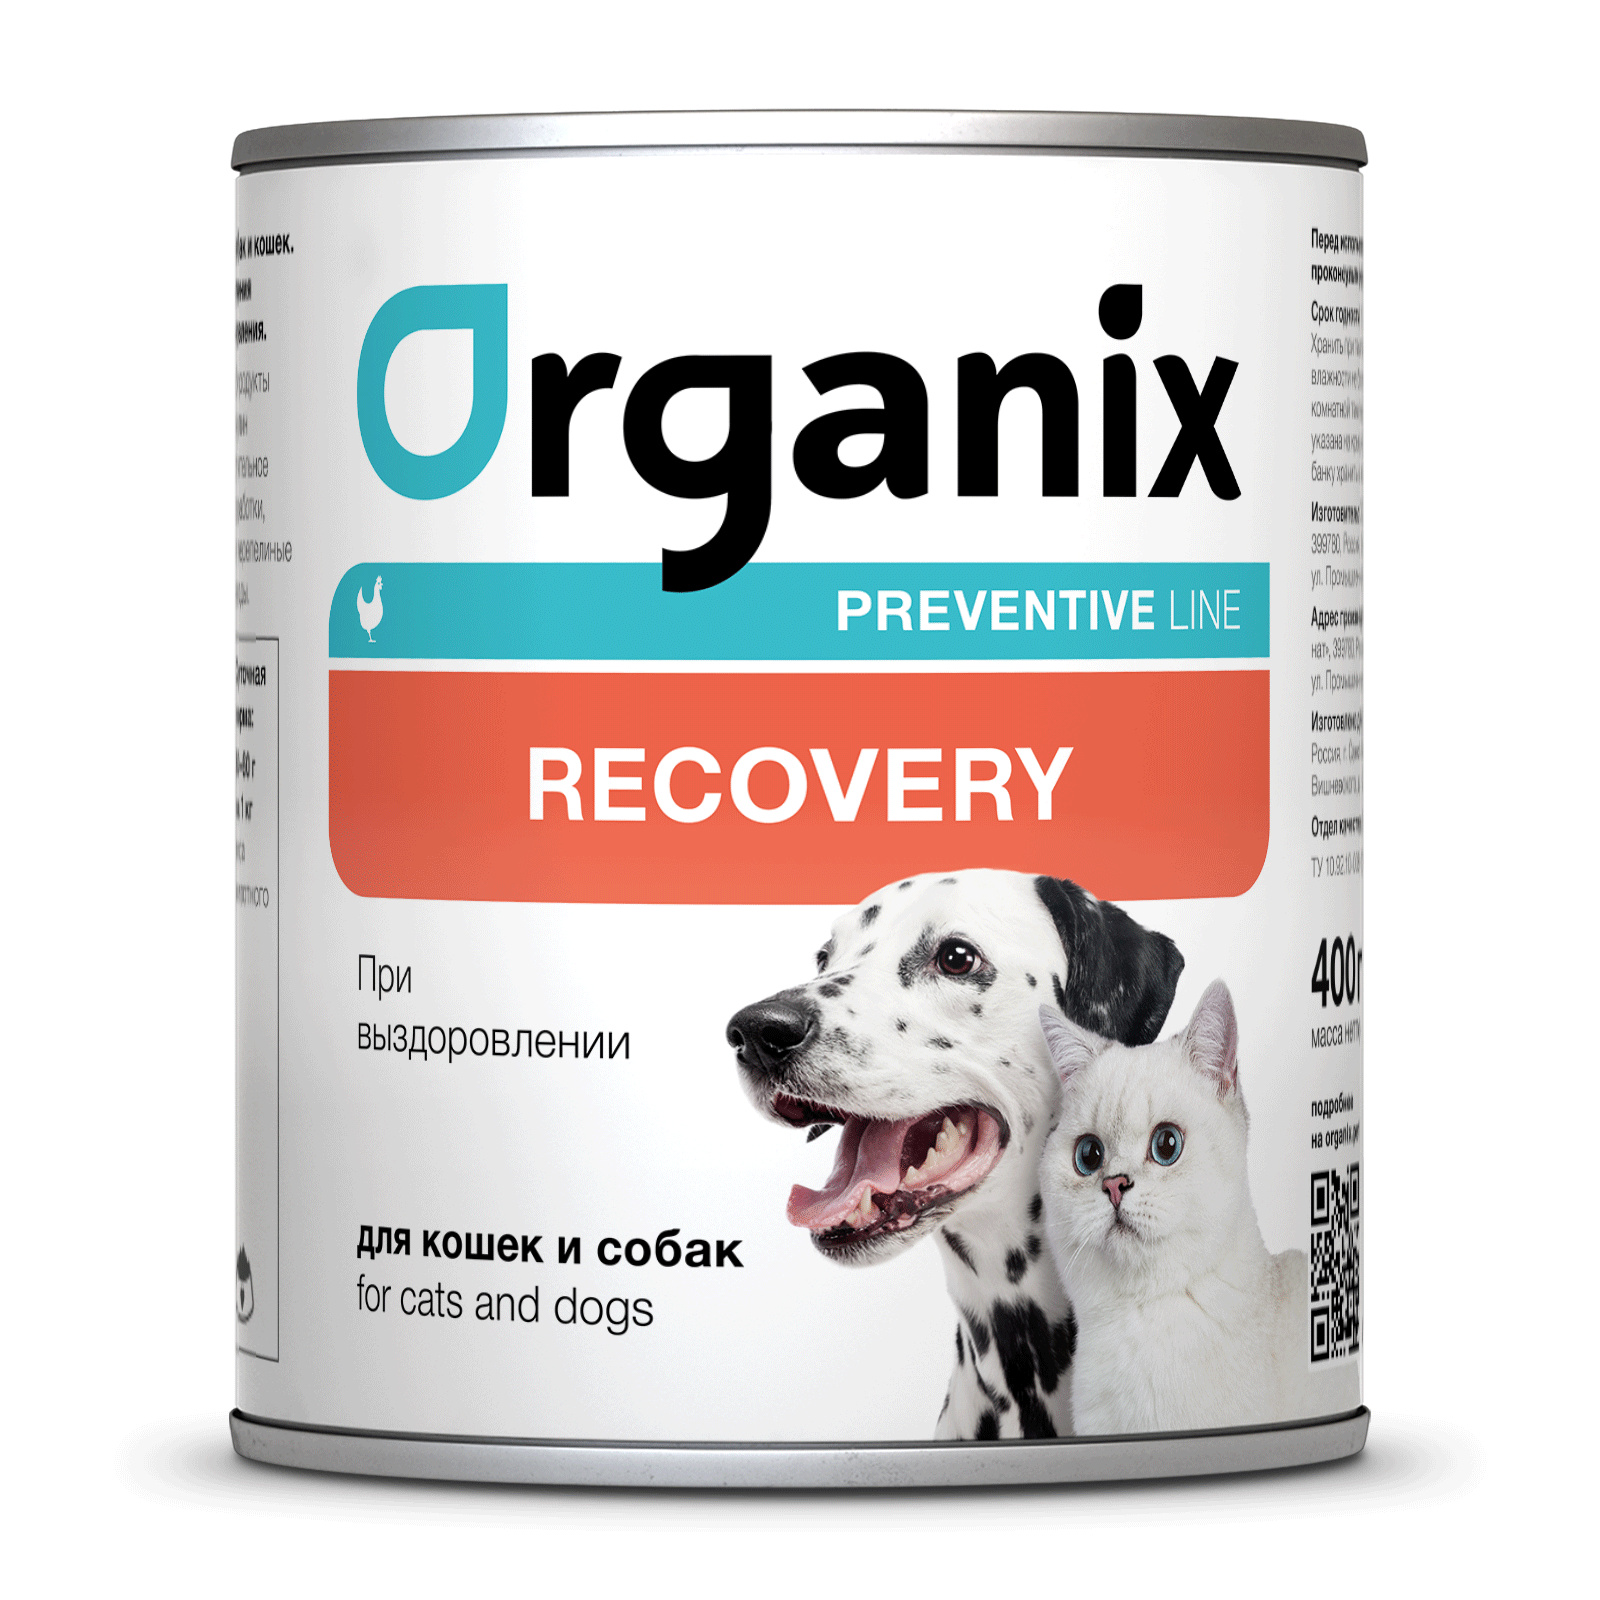 Organix Preventive Line консервы Organix Preventive Line консервы recovery для кошек и собак в период анорексии, выздоровления и послеоперационного восстановления (240 г) фото